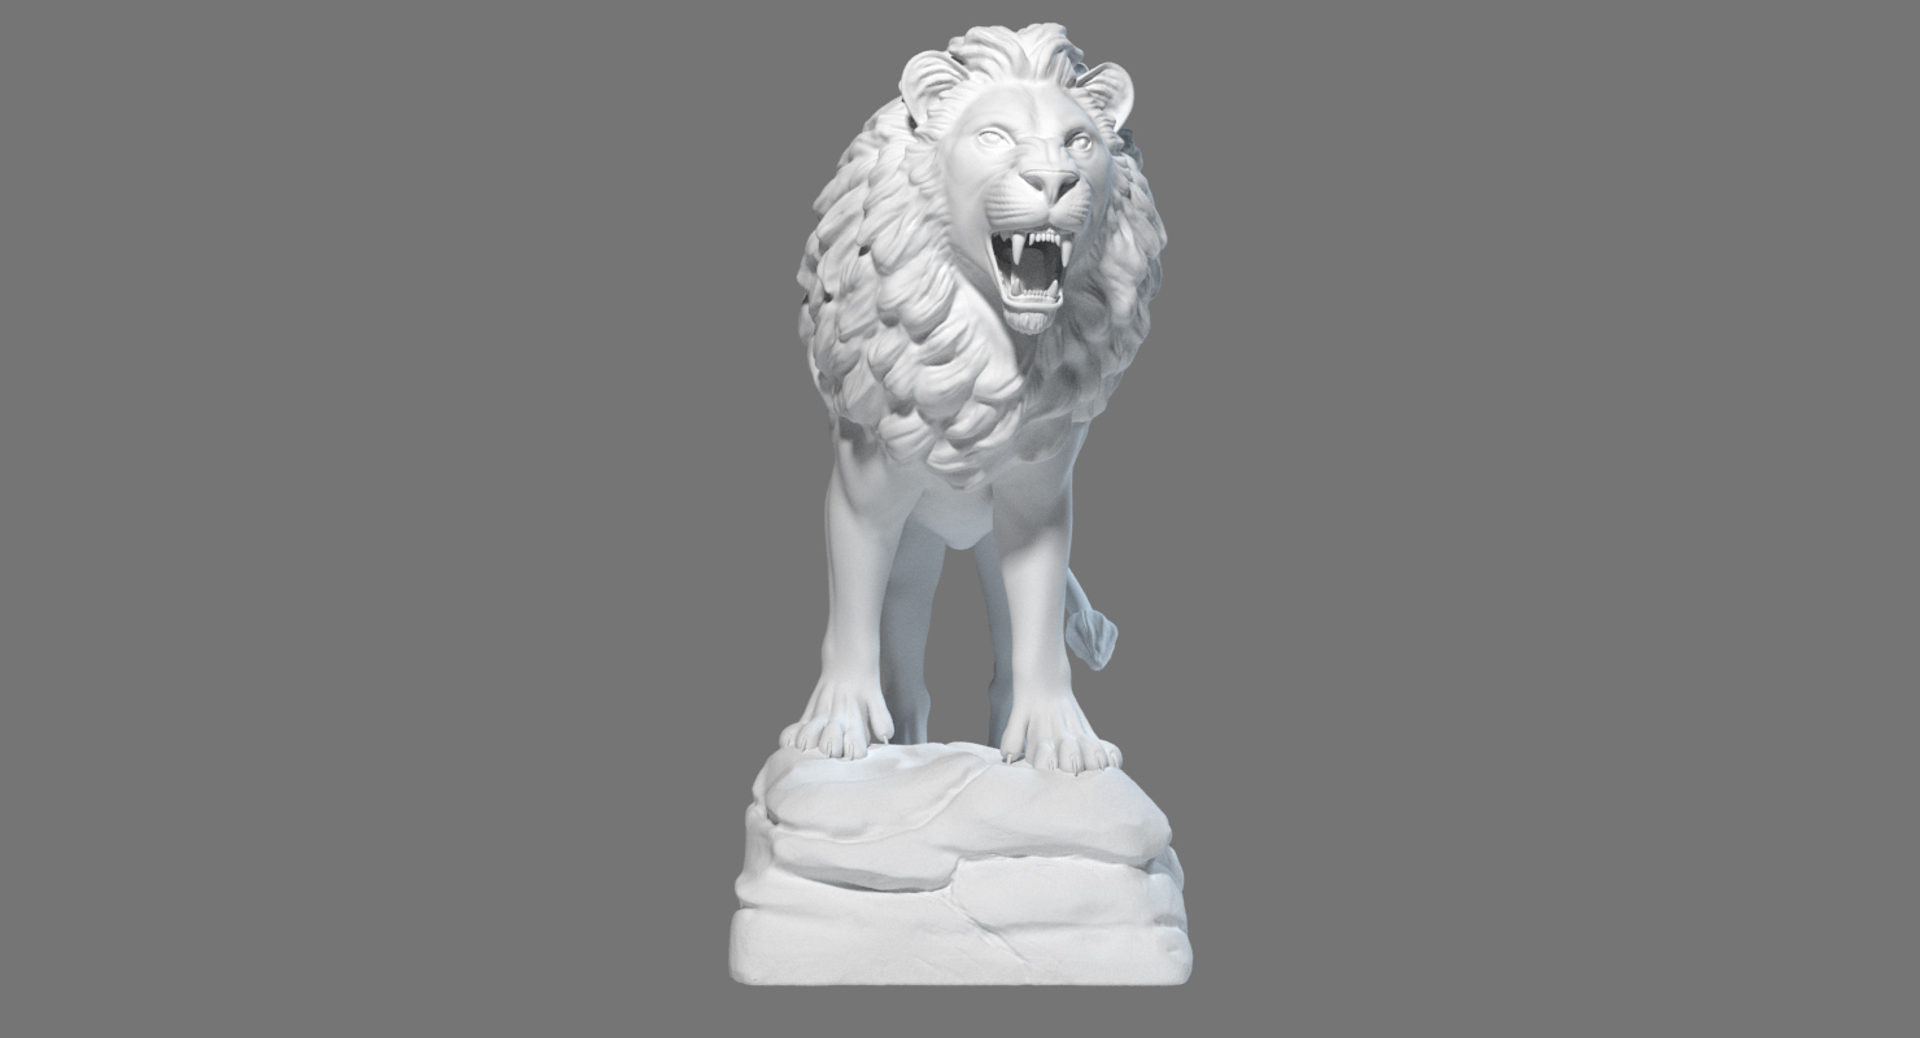 lion statue sculpture 3d ma https://p.turbosquid.com/ts-thumb/nJ/4SSRuv/3yohkULu/turn/jpg/1463736041/1920x1080/turn_fit_q99/d147d6d705ec90720ddde9304fc99fe3d73e2c6e/turn-1.jpg